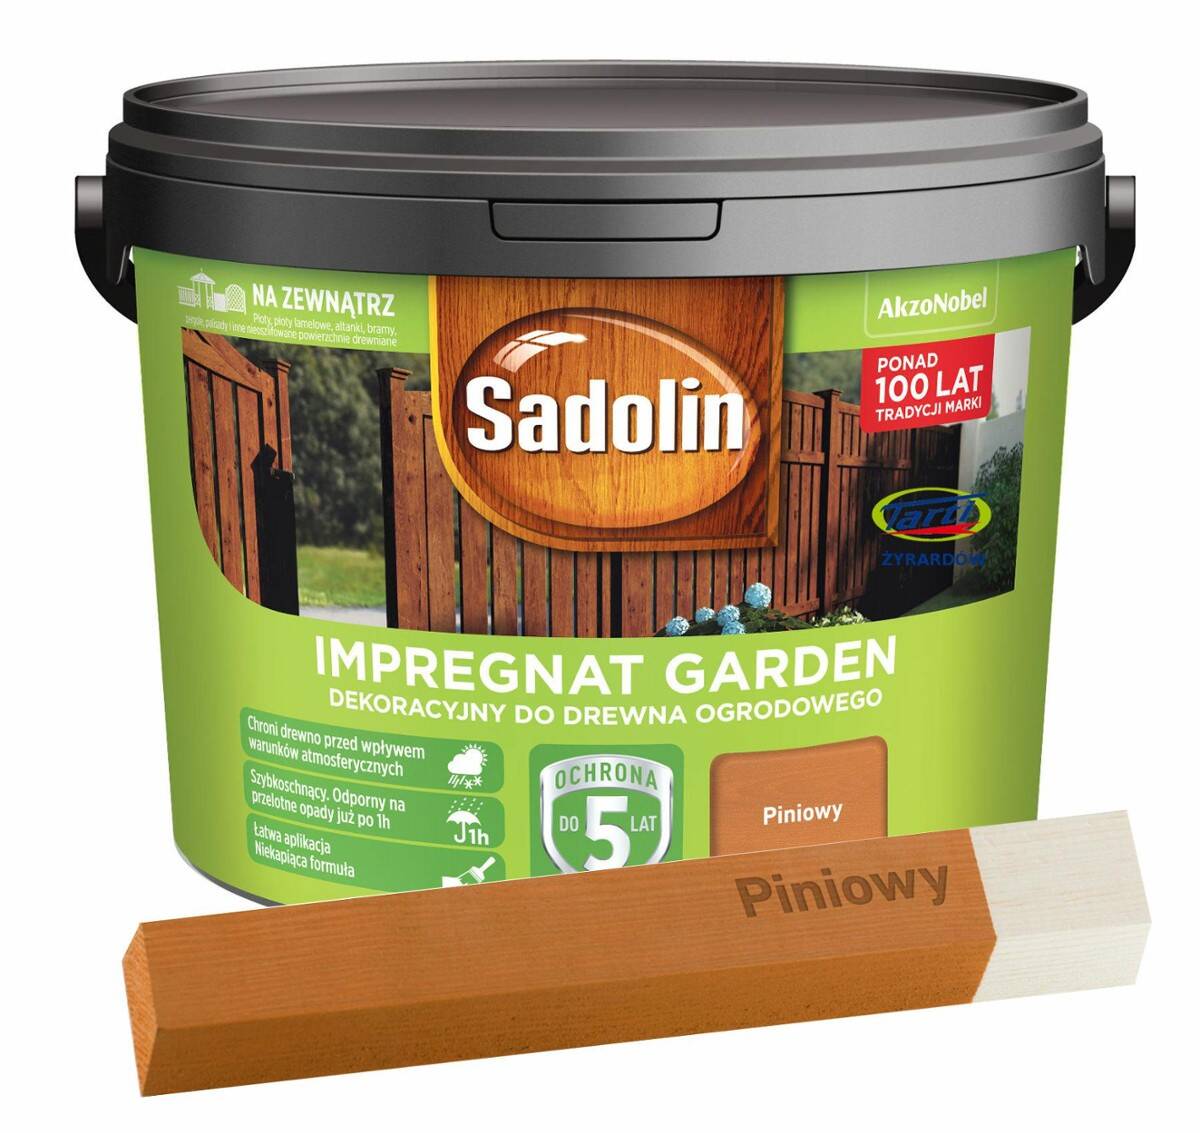 Sadolin GARDEN Impregnat dekoracyjny do drewna ogrodowego 9l. piniowy (Zdjęcie 1)